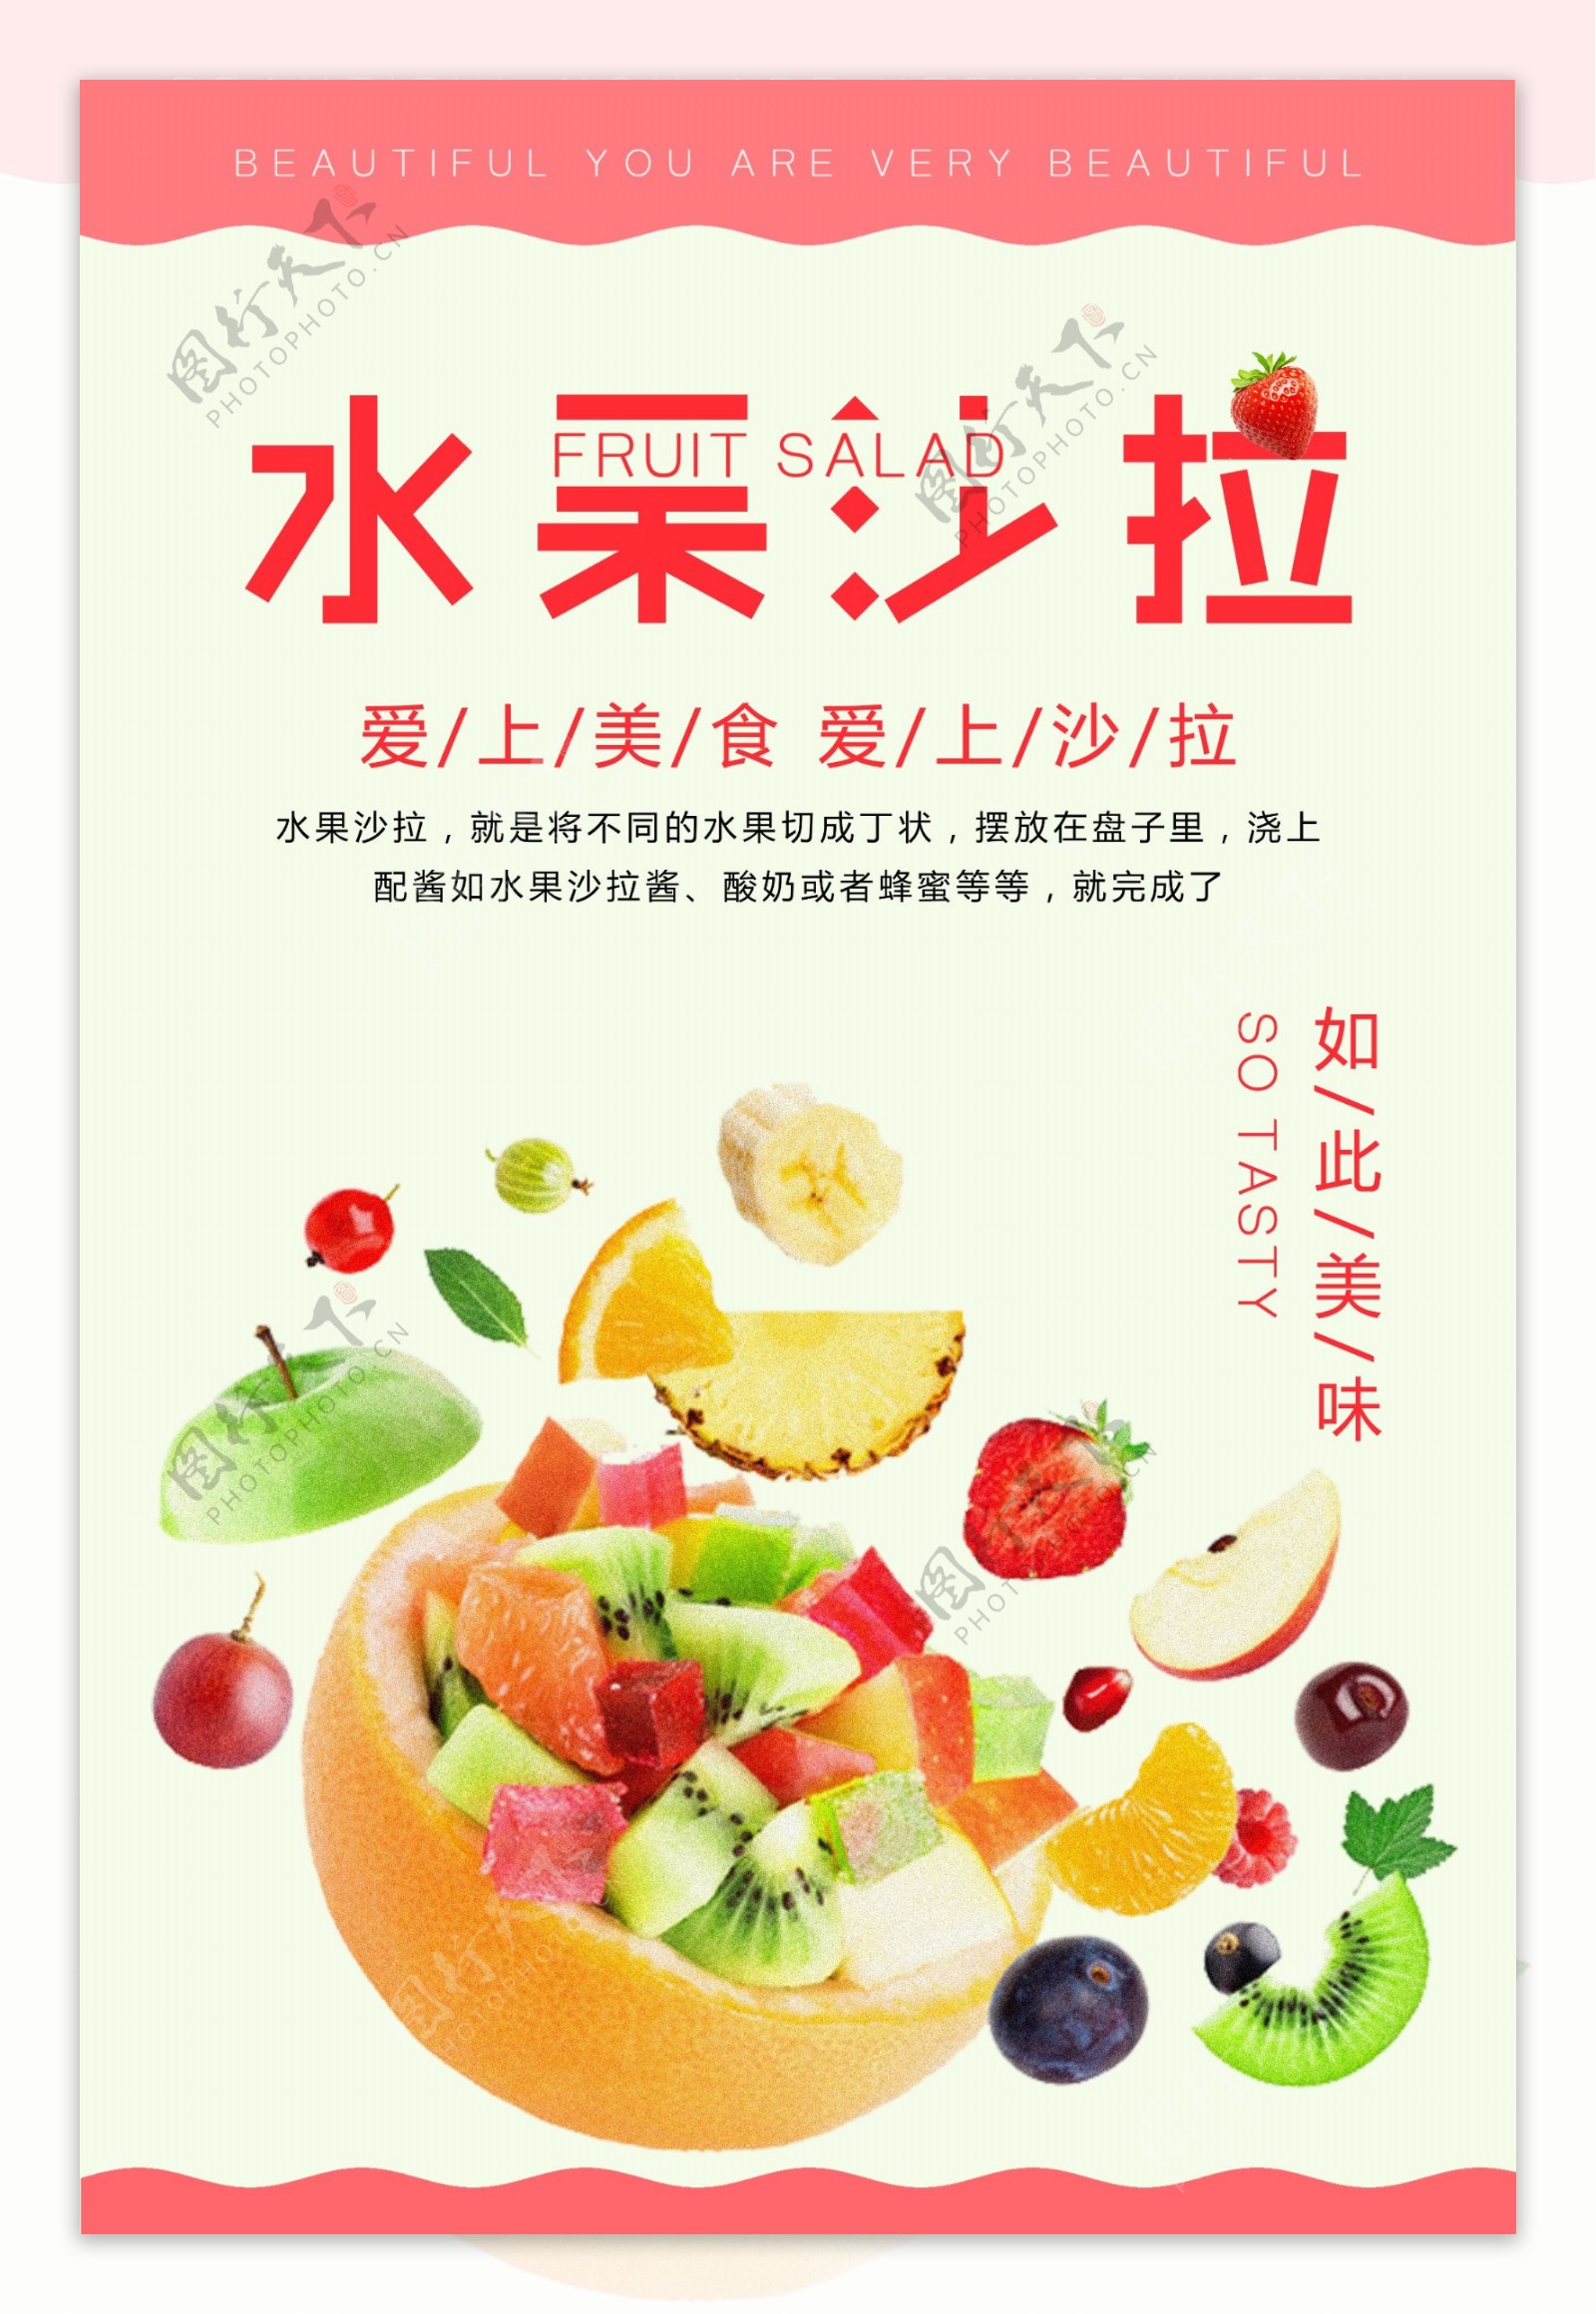 小清新简约水果沙拉美食海报